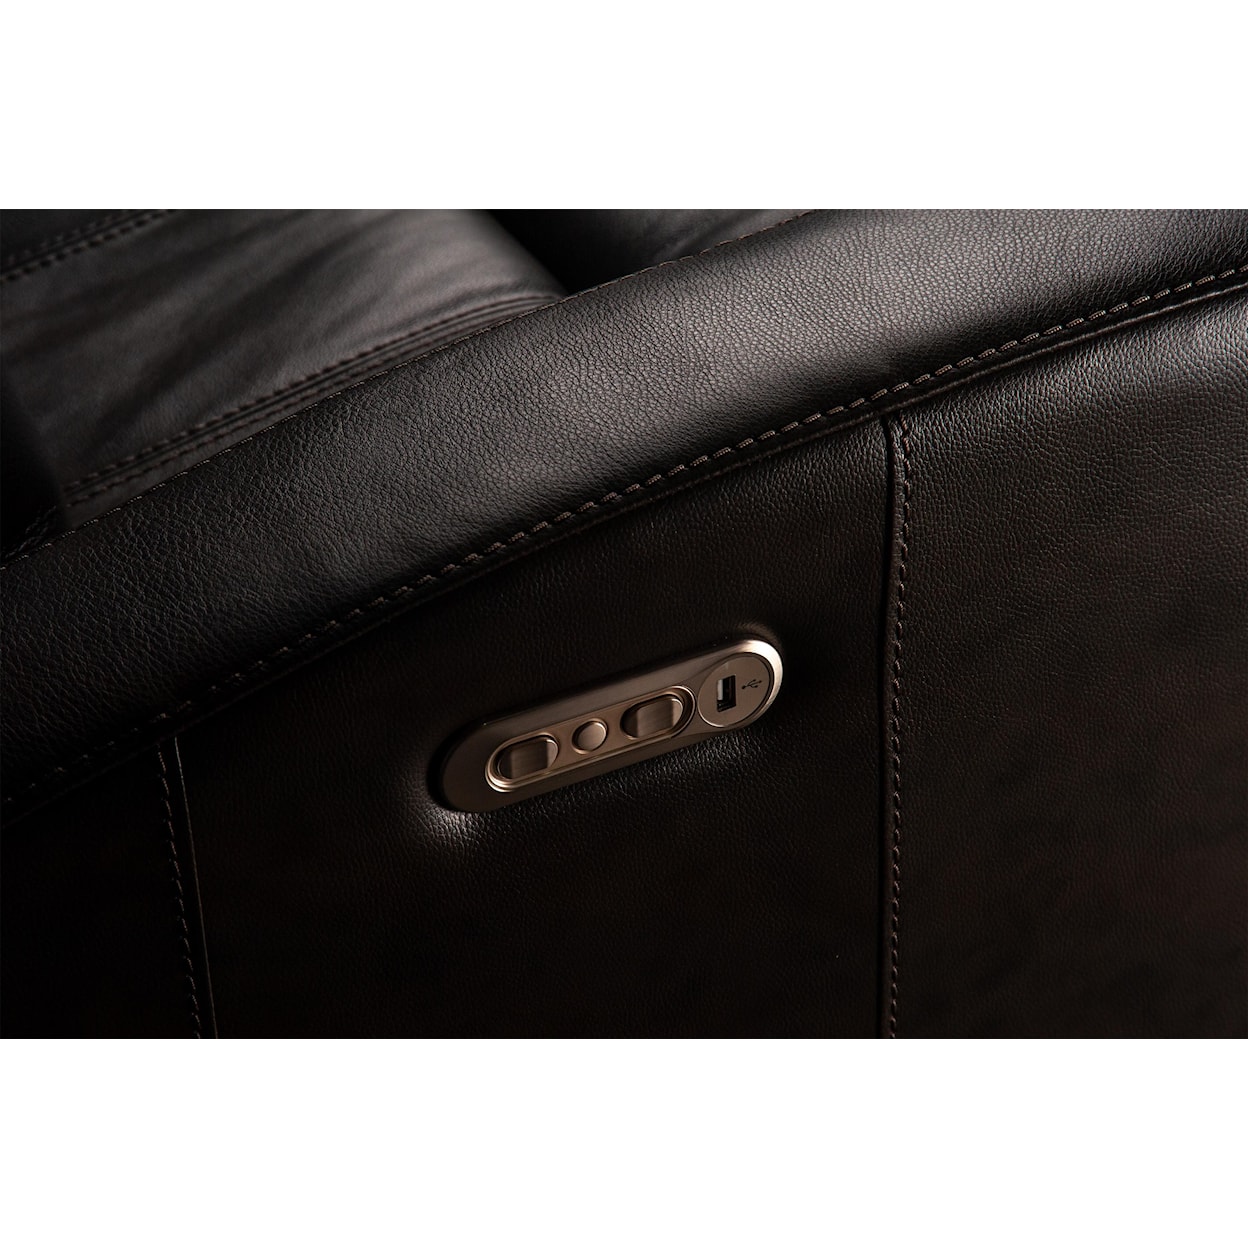 Flexsteel Wynwood Collection Cordelia Cordelia Leather Match Power Sofa